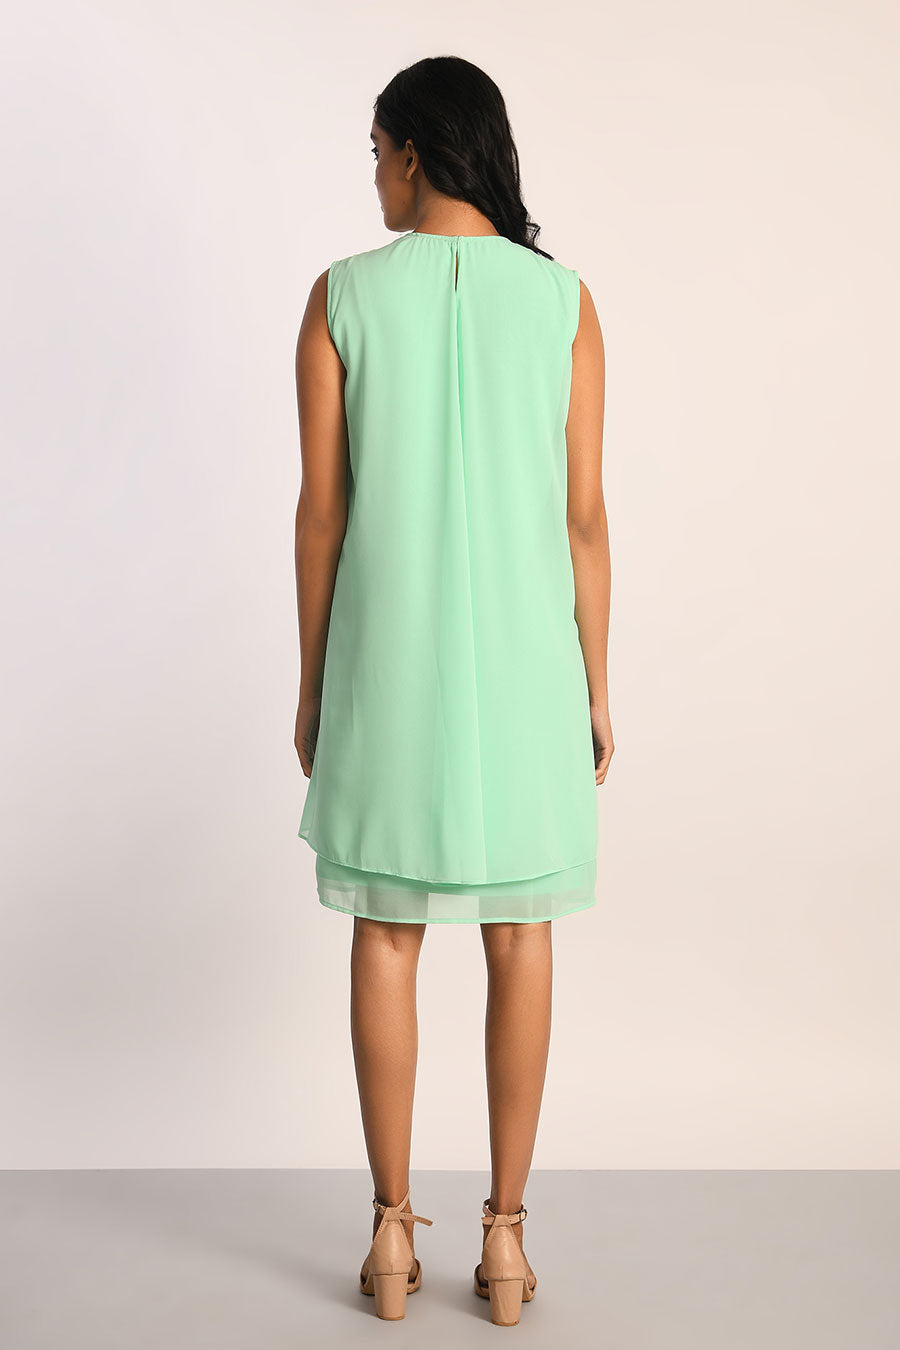 Mint Green Jewel Neck Dress